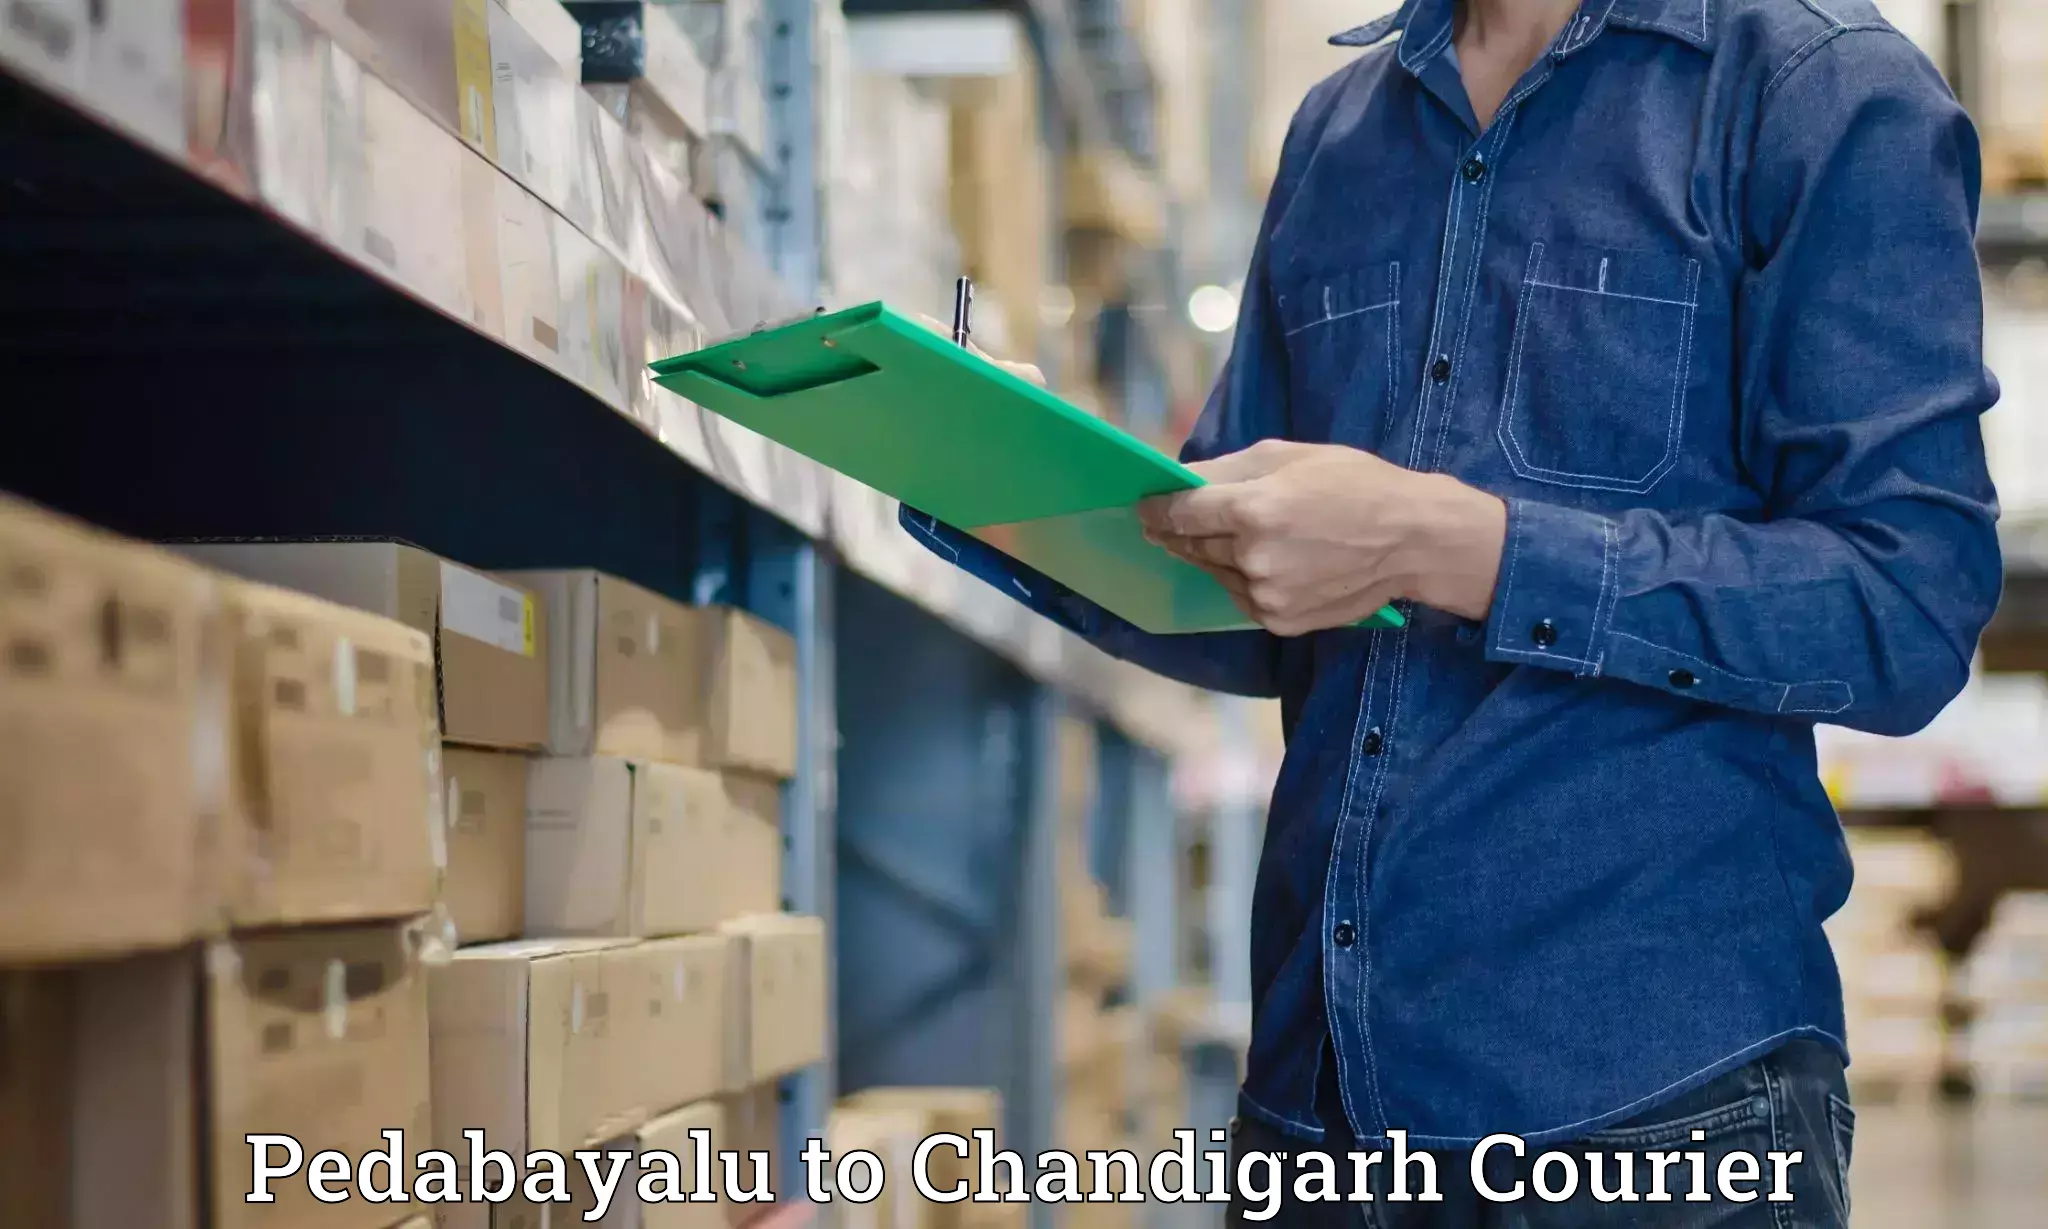 Express delivery network Pedabayalu to Panjab University Chandigarh